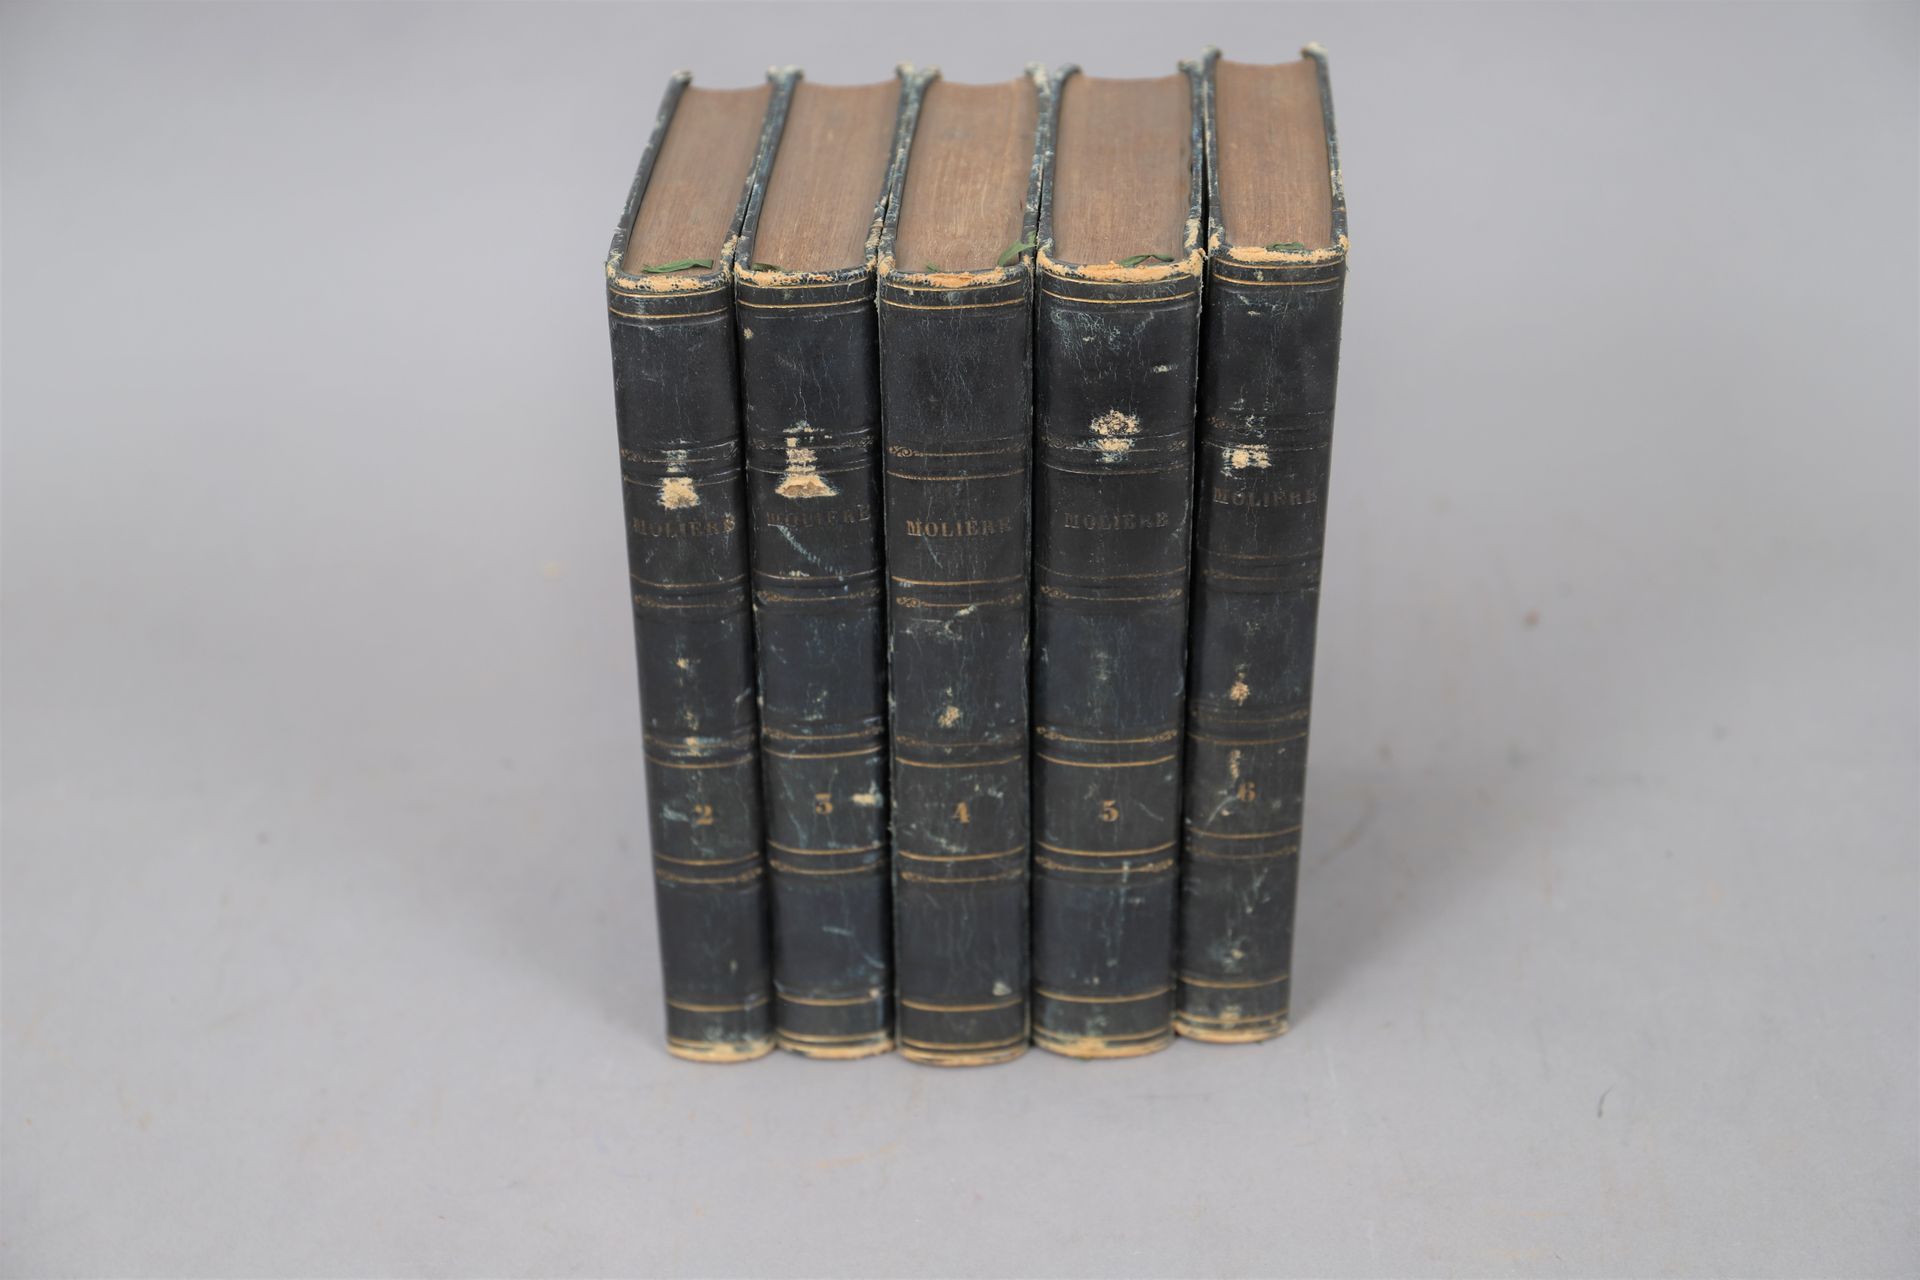 Null OBRAS de MOLIERE

Alrededor de 1850

5 volúmenes encuadernados.